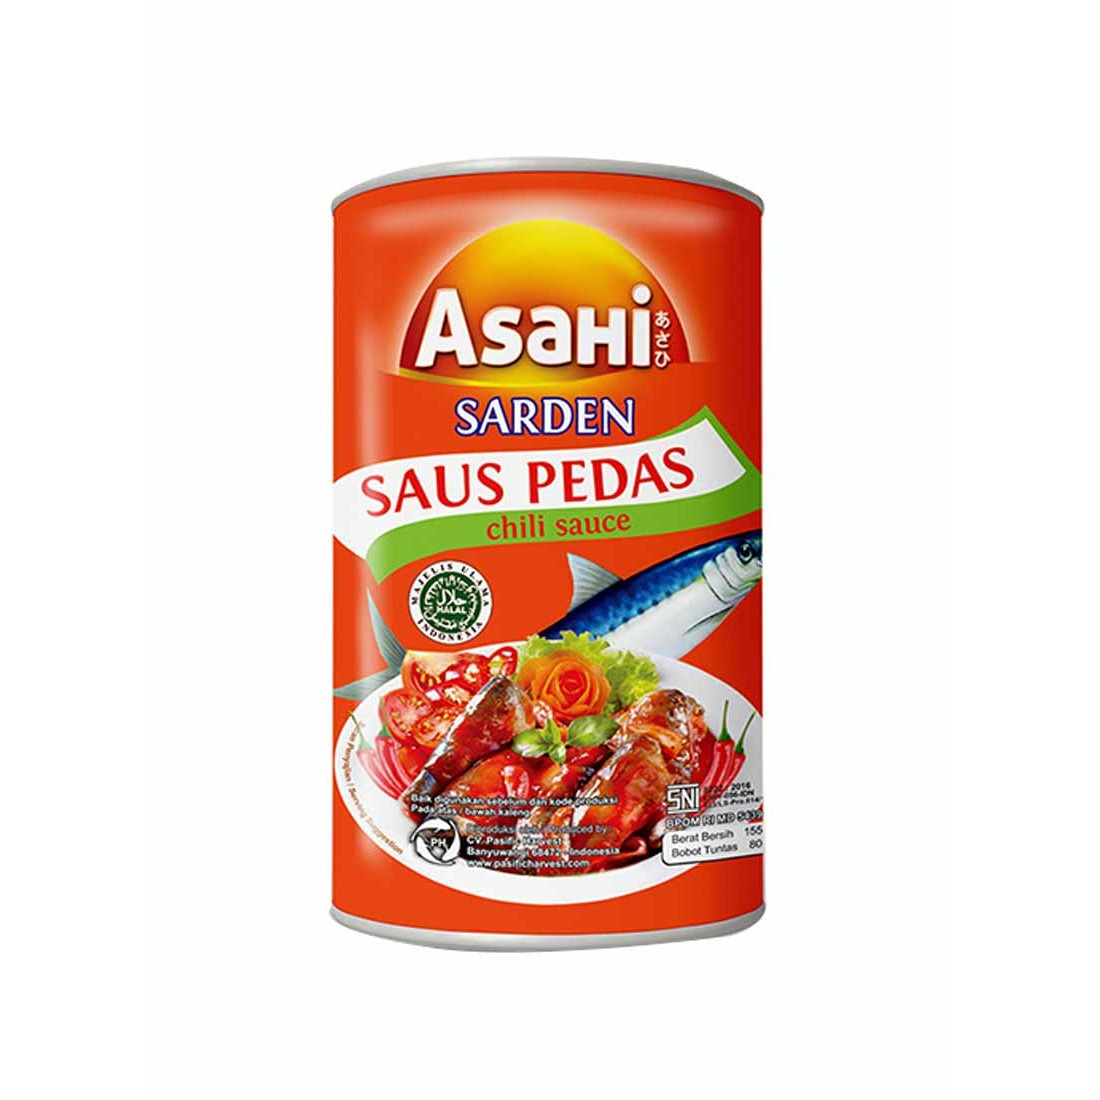 Asahi 155G Sardines Saus Pedas